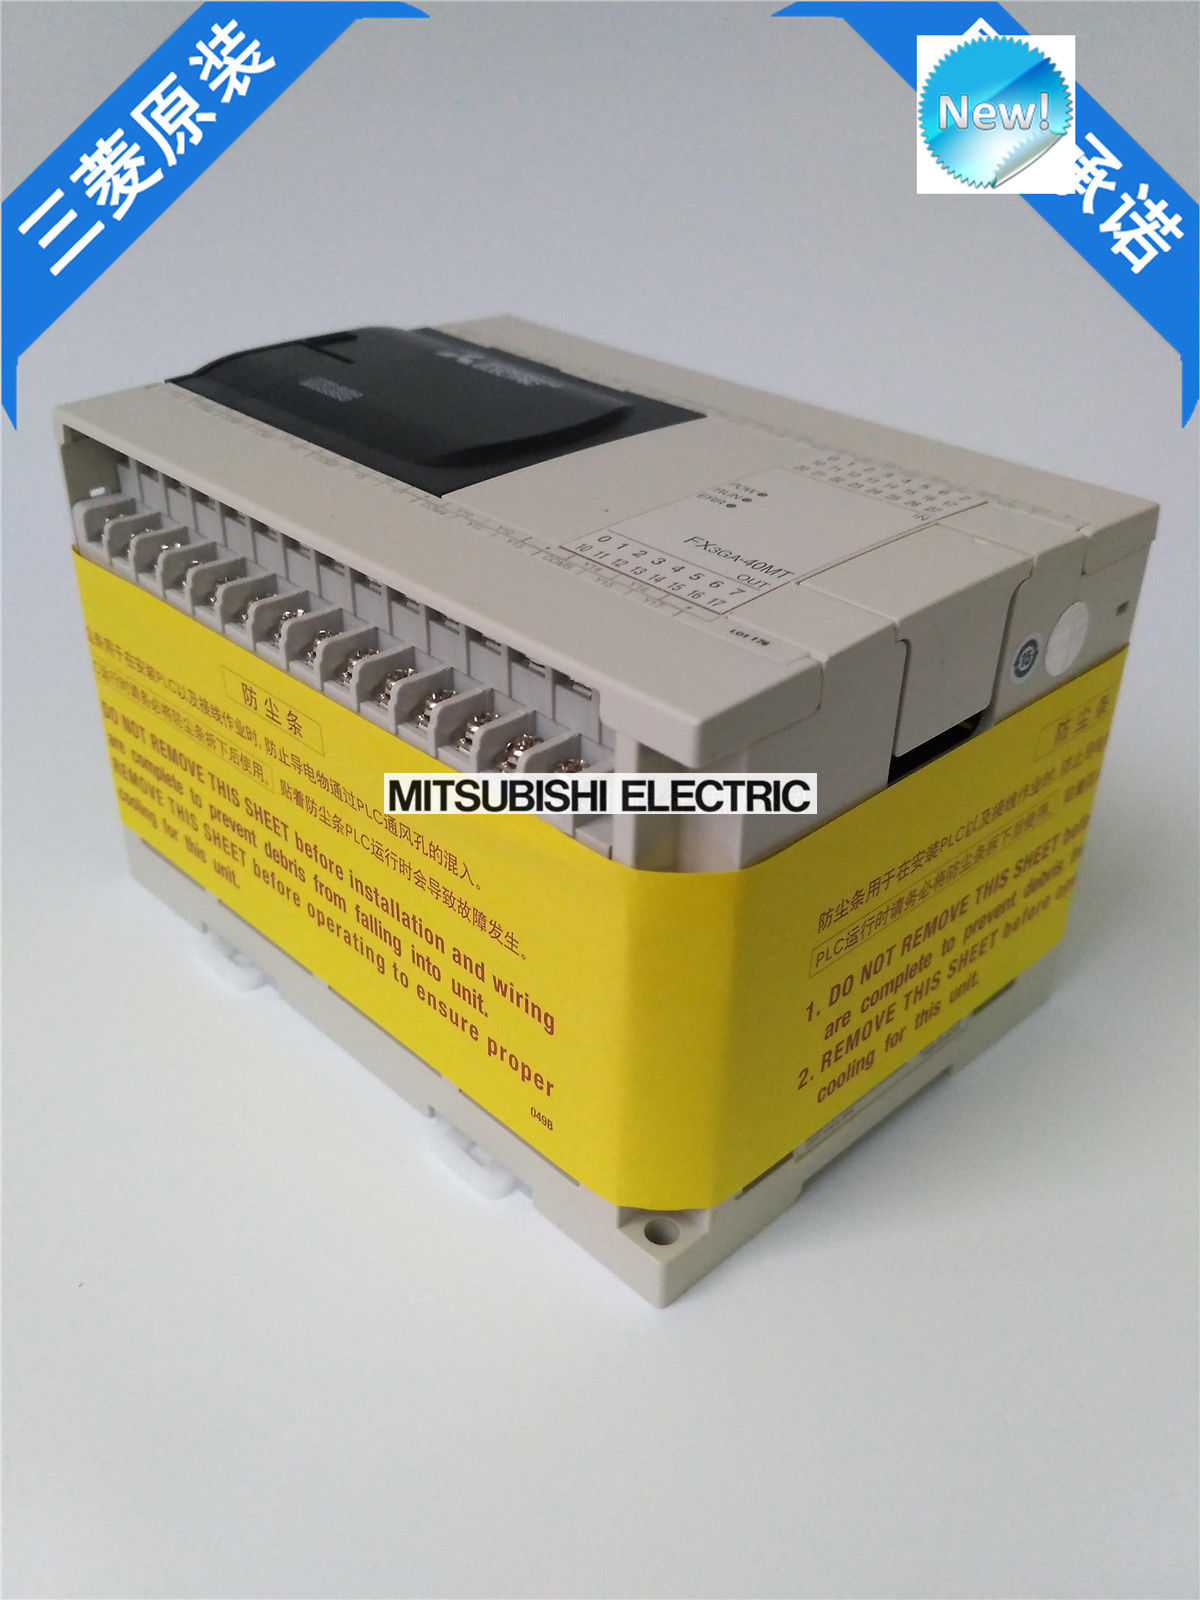 Original New Mitsubishi PLC FX3GA-40MT-CM In Box FX3GA40MTCM - zum Schließen ins Bild klicken